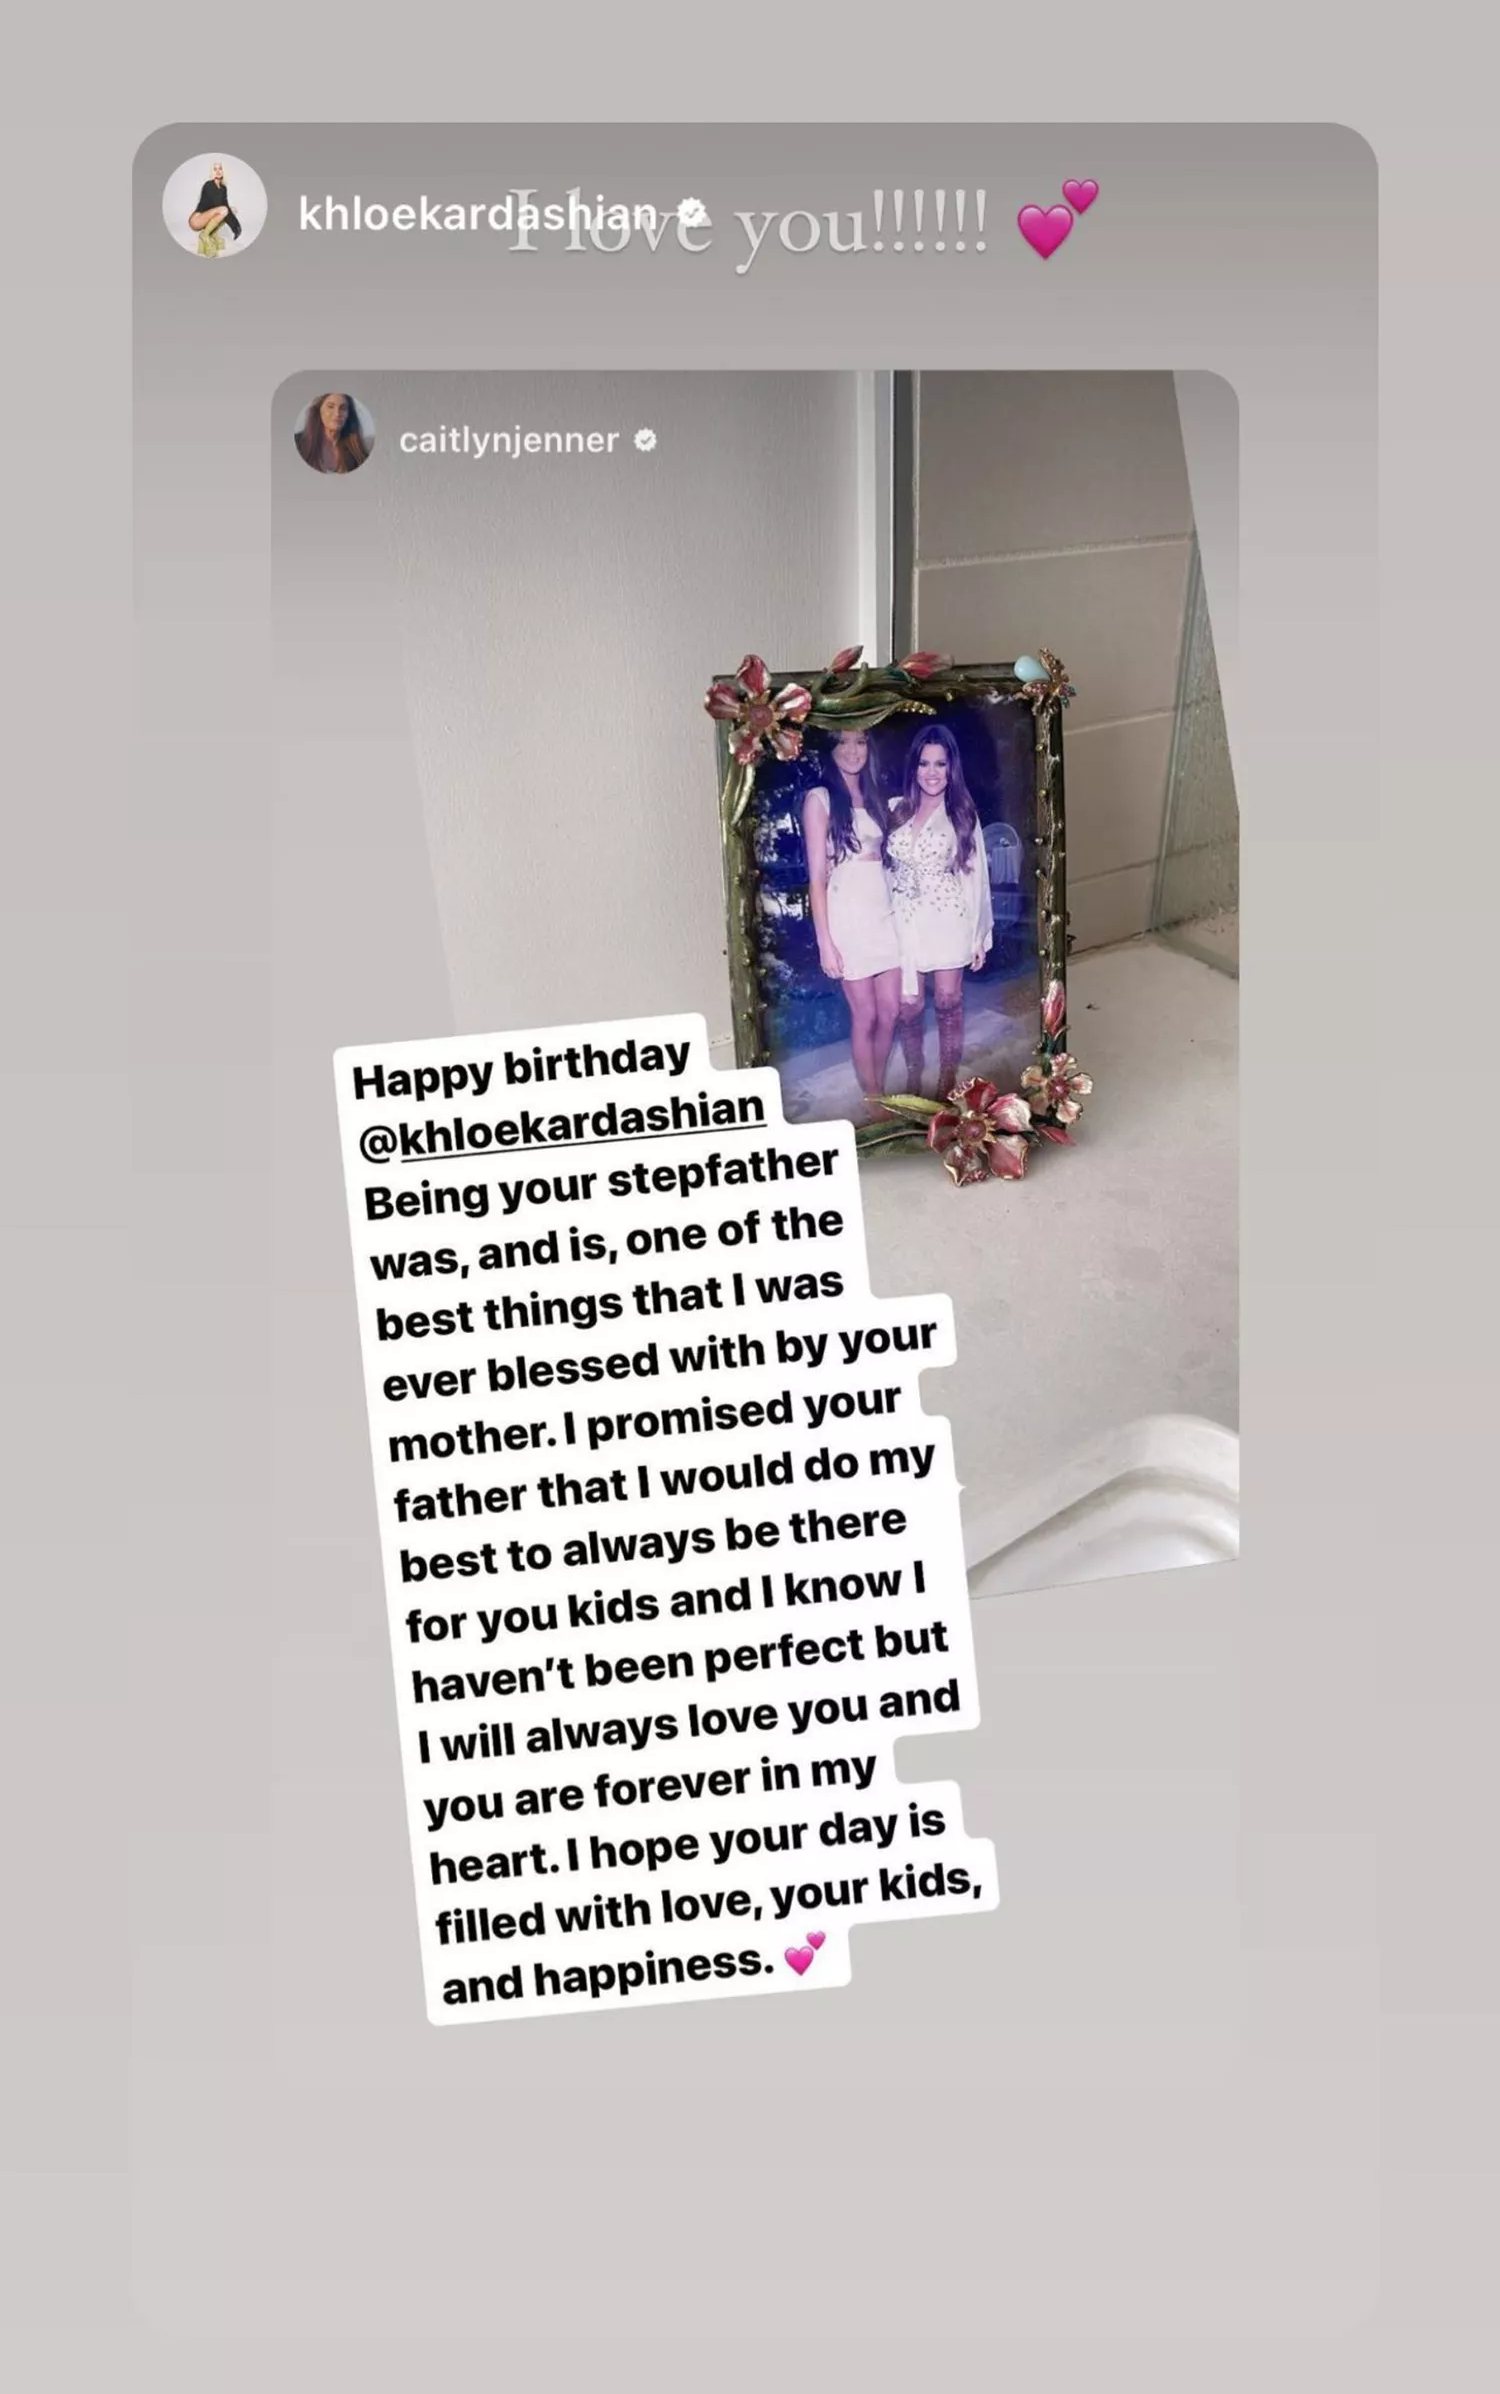 Khloe Kardashian's Instagram post